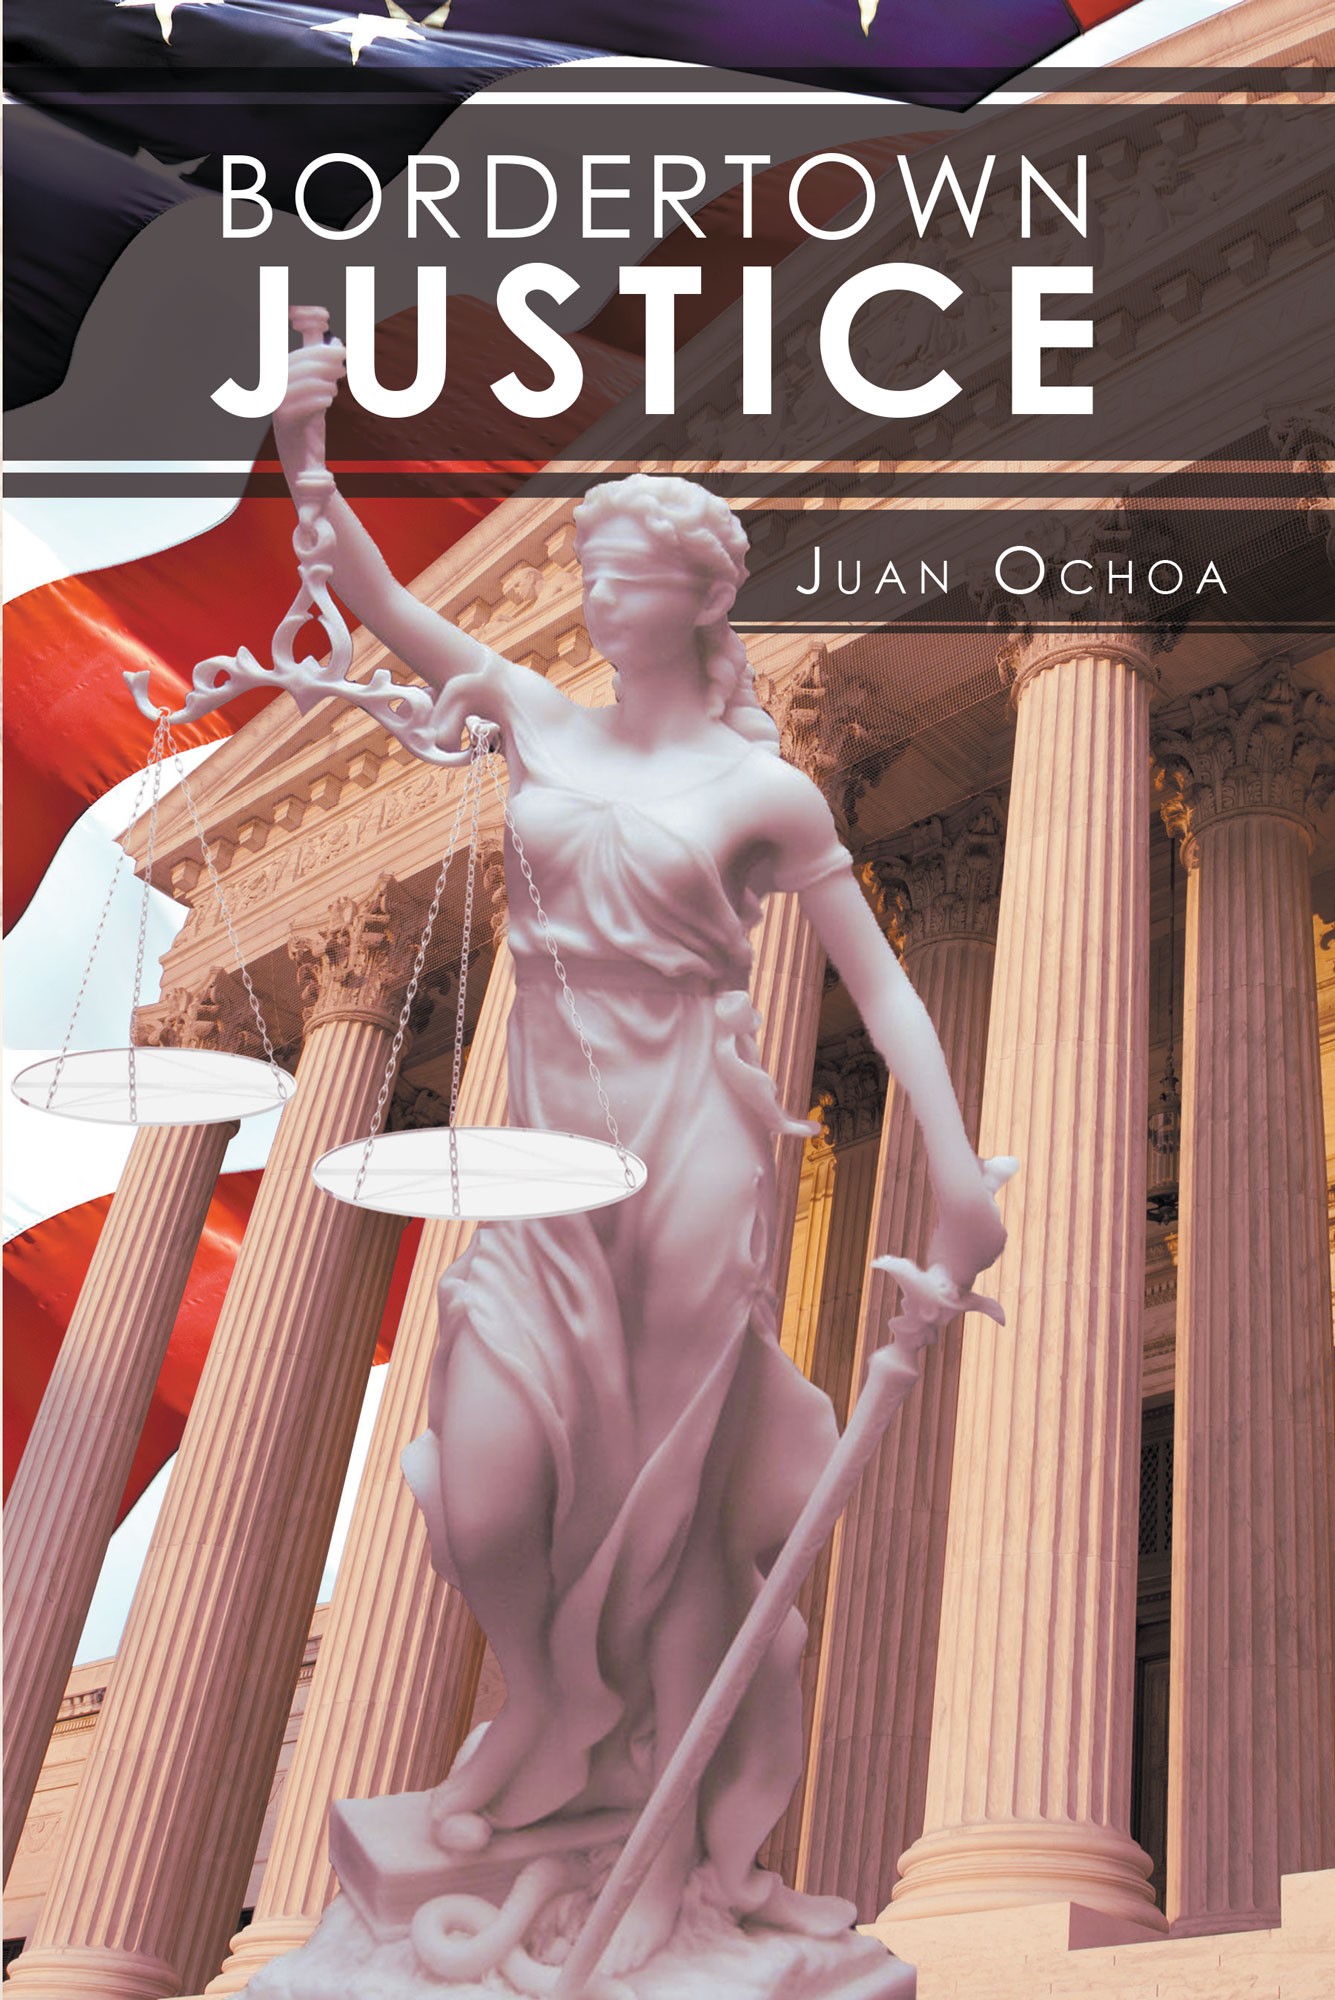 Juan Ochoa S New Book Quot Bordertown Justice Quot Is A Potent